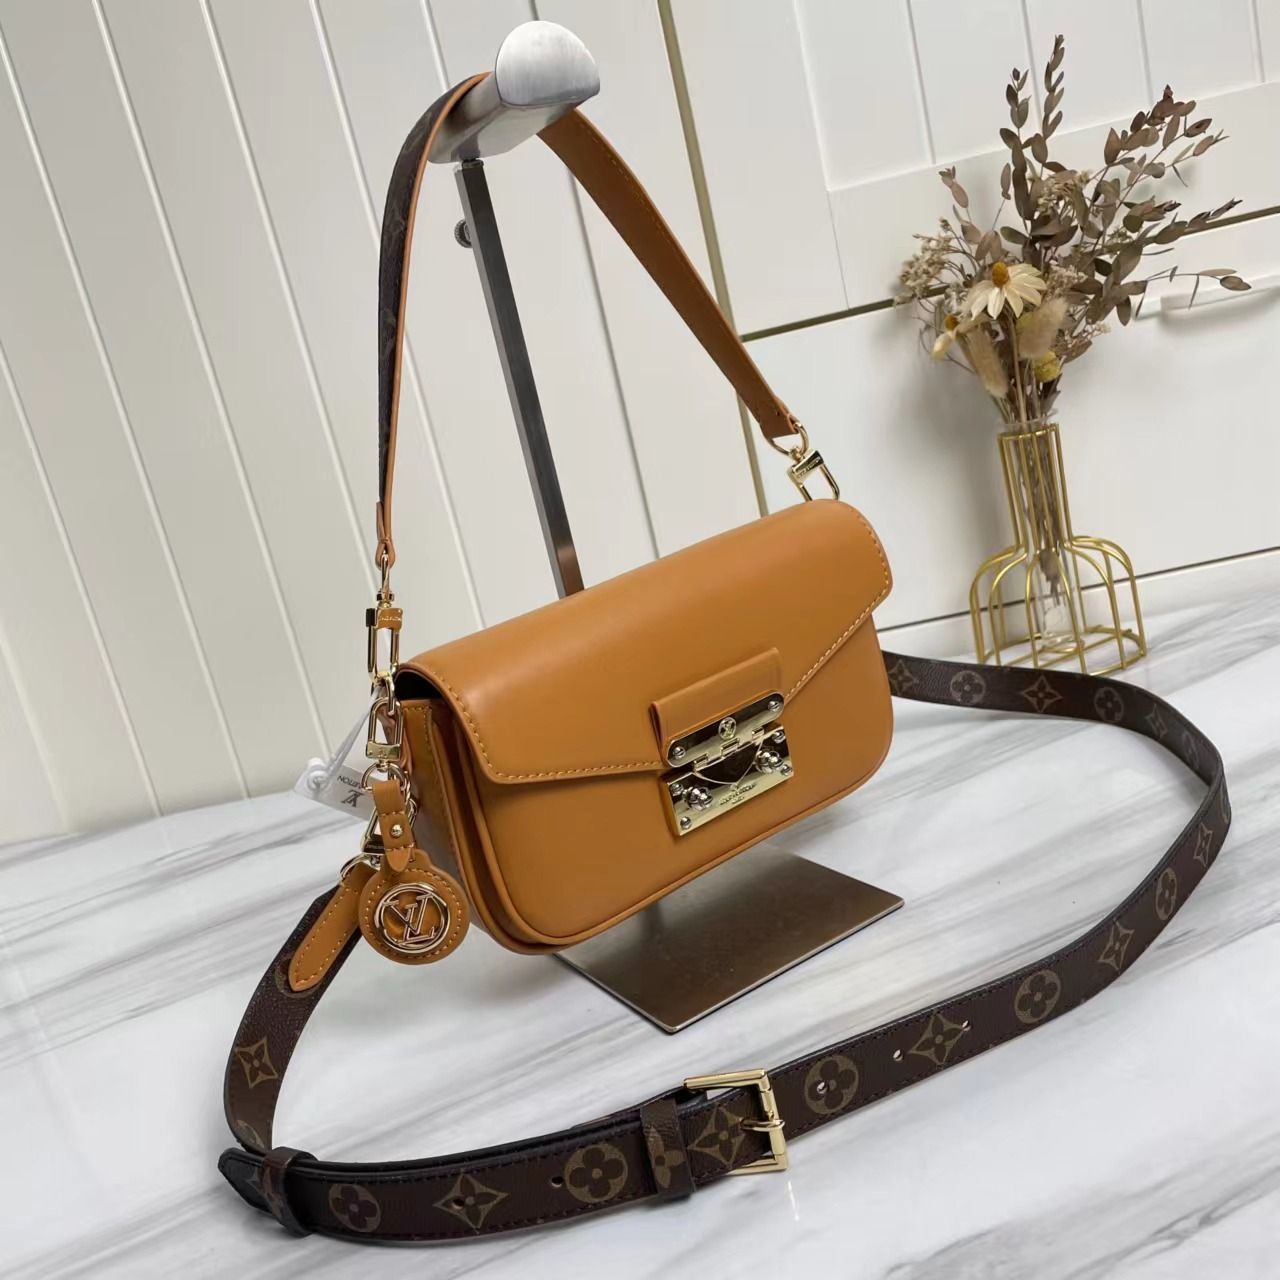 A bag Swing Fashion Leather 24 cm фото 2